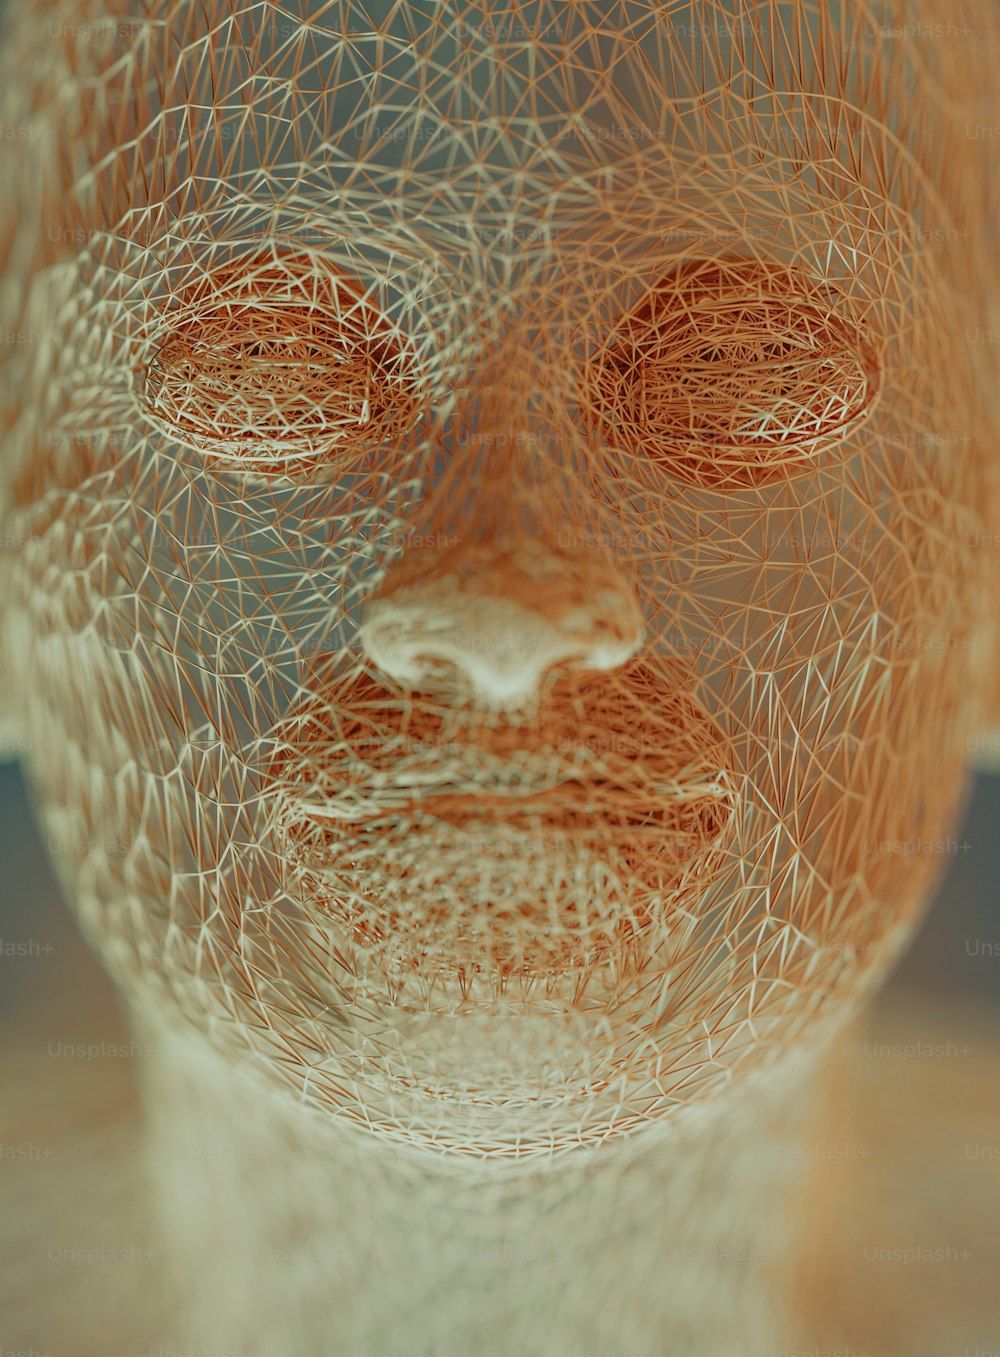 Una escultura de alambre de la cara de un hombre con los ojos cerrados